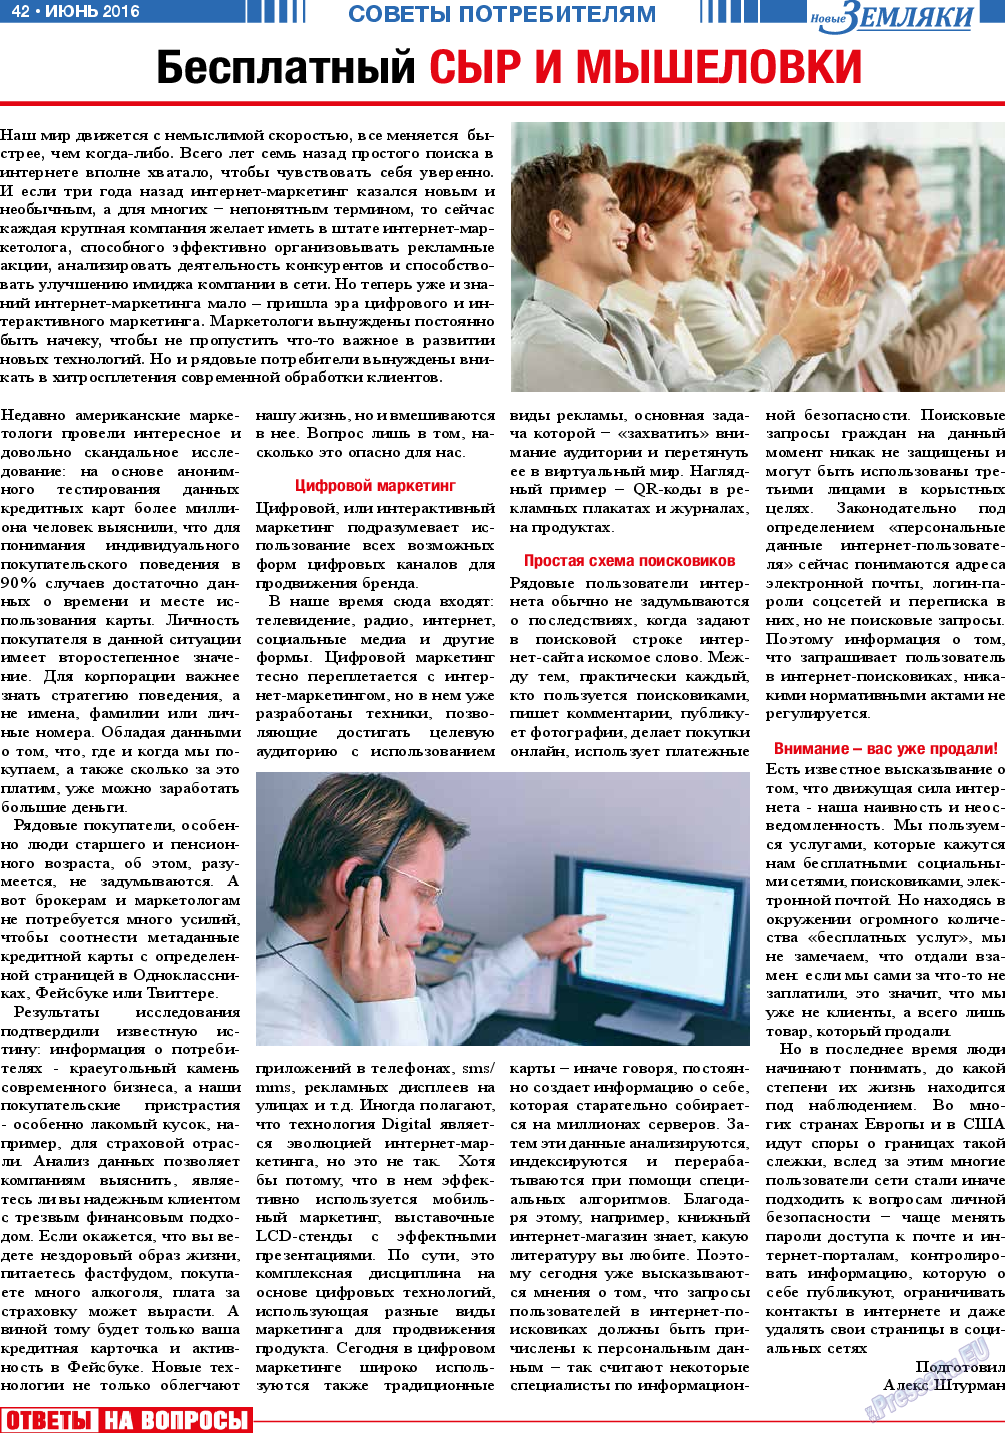 Новые Земляки, газета. 2016 №6 стр.42